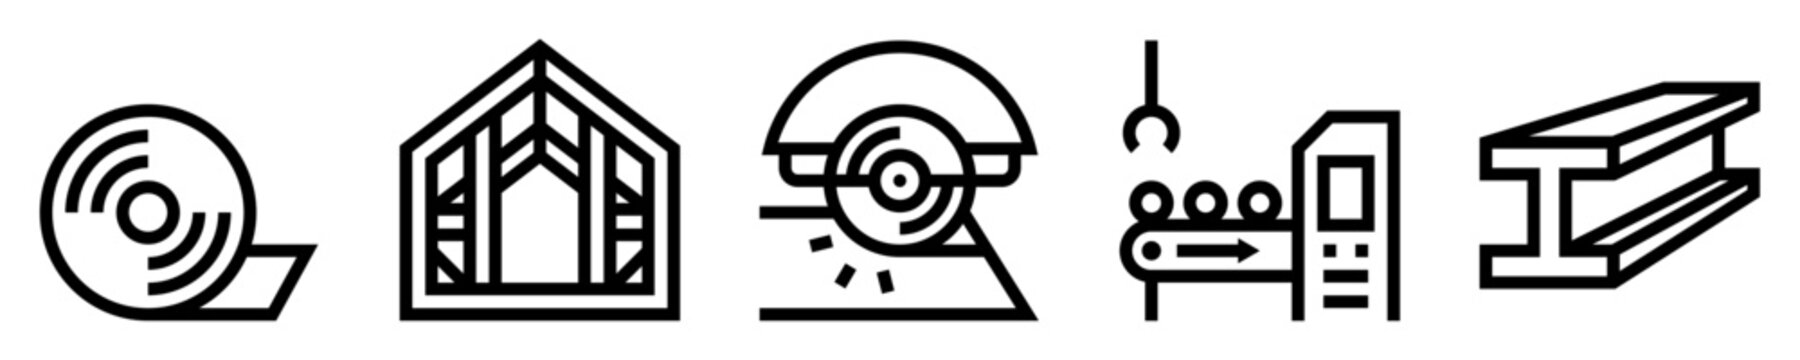 Conjunto de iconos de acero. Manufactura. Bobina, estructura, sierra circular, línea de producción, barra. Ilustración vectorial